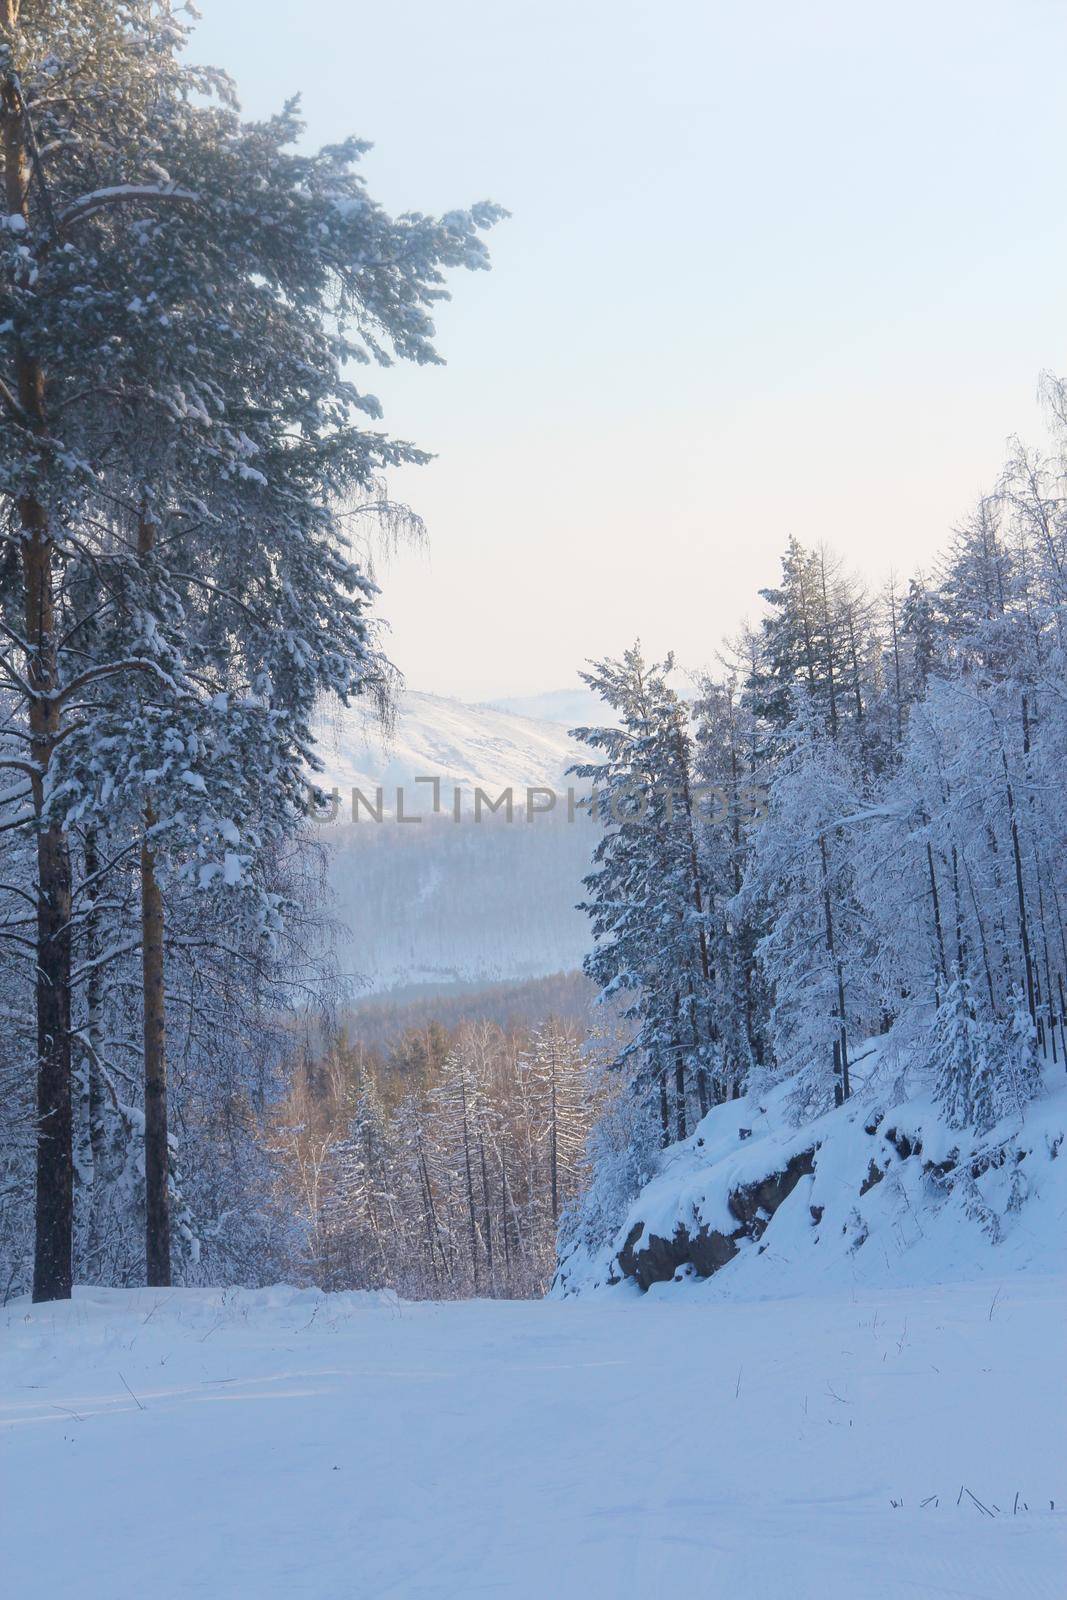 Winter snow mountain landscape by destillat